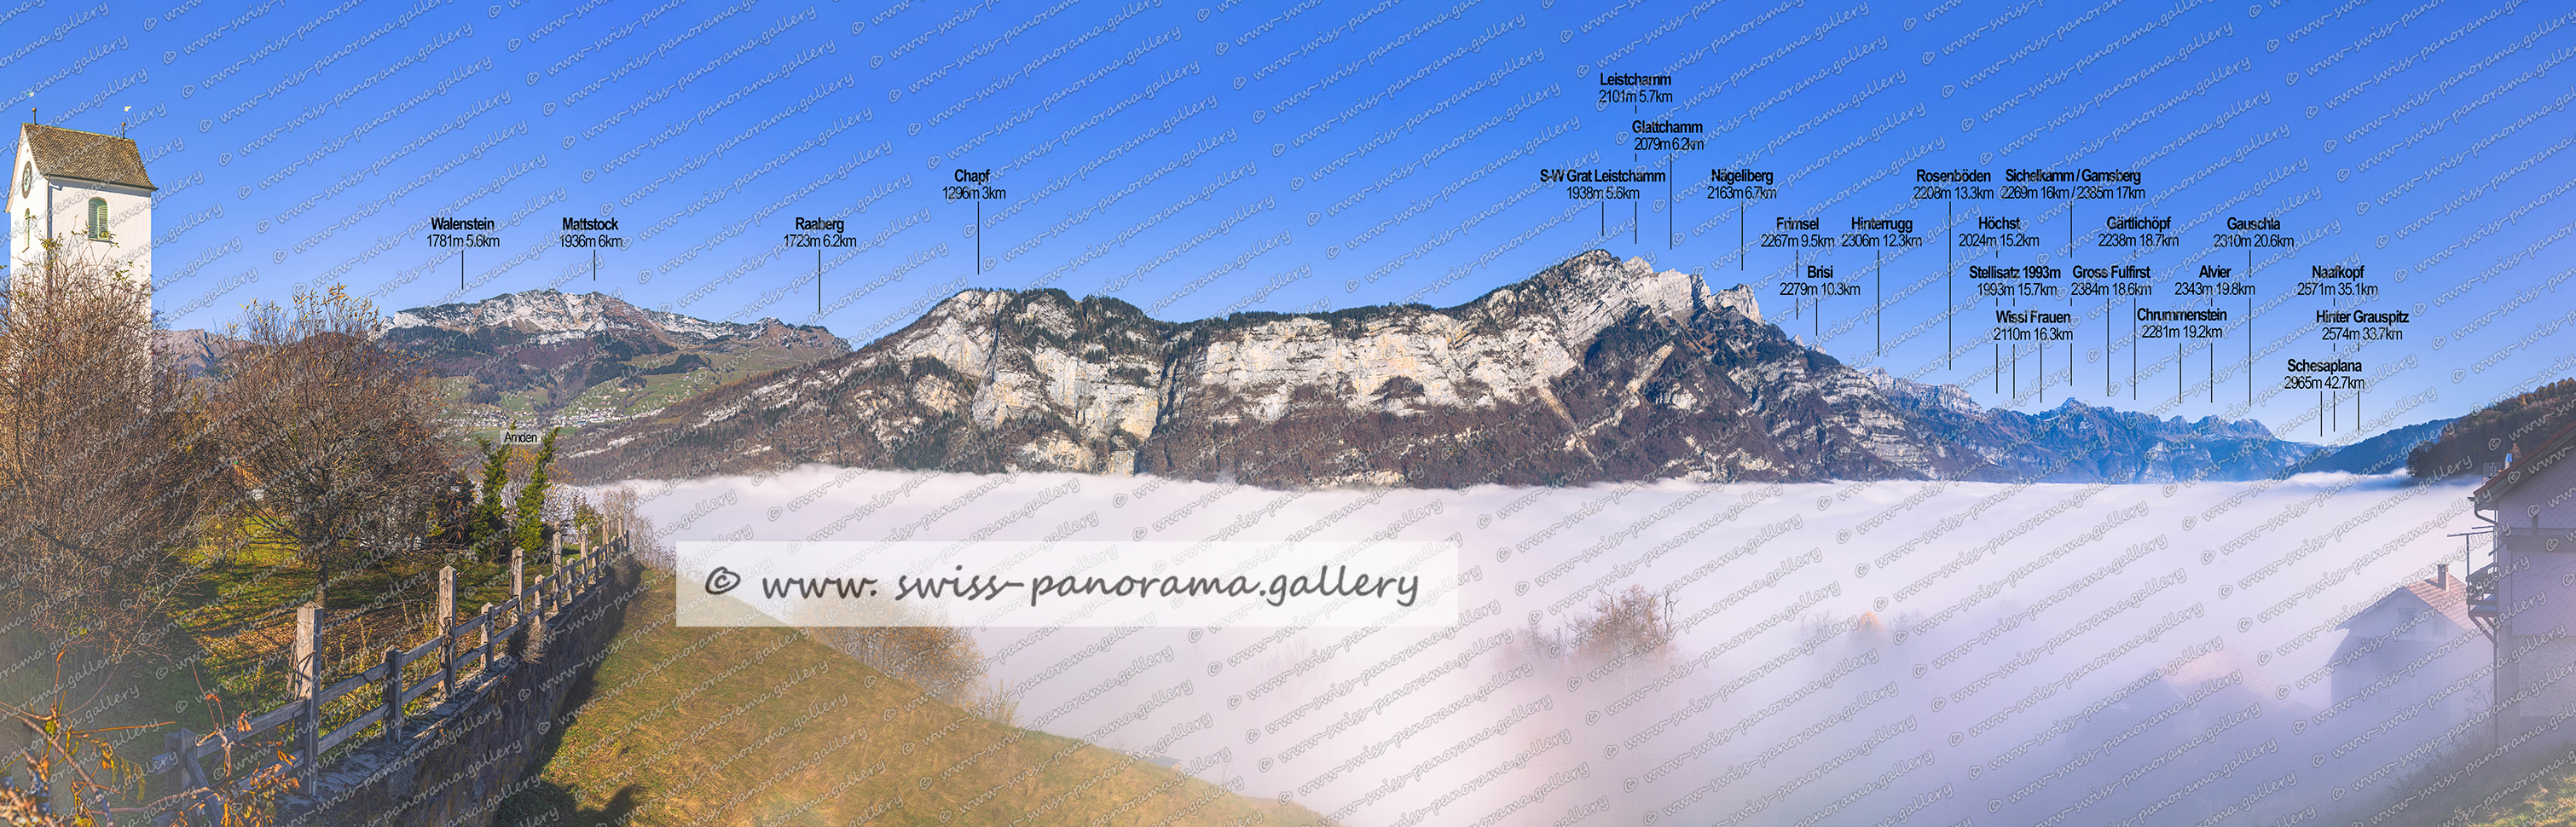 Panorama Kerenzerberg Obstalden Churfirsten und Alvier